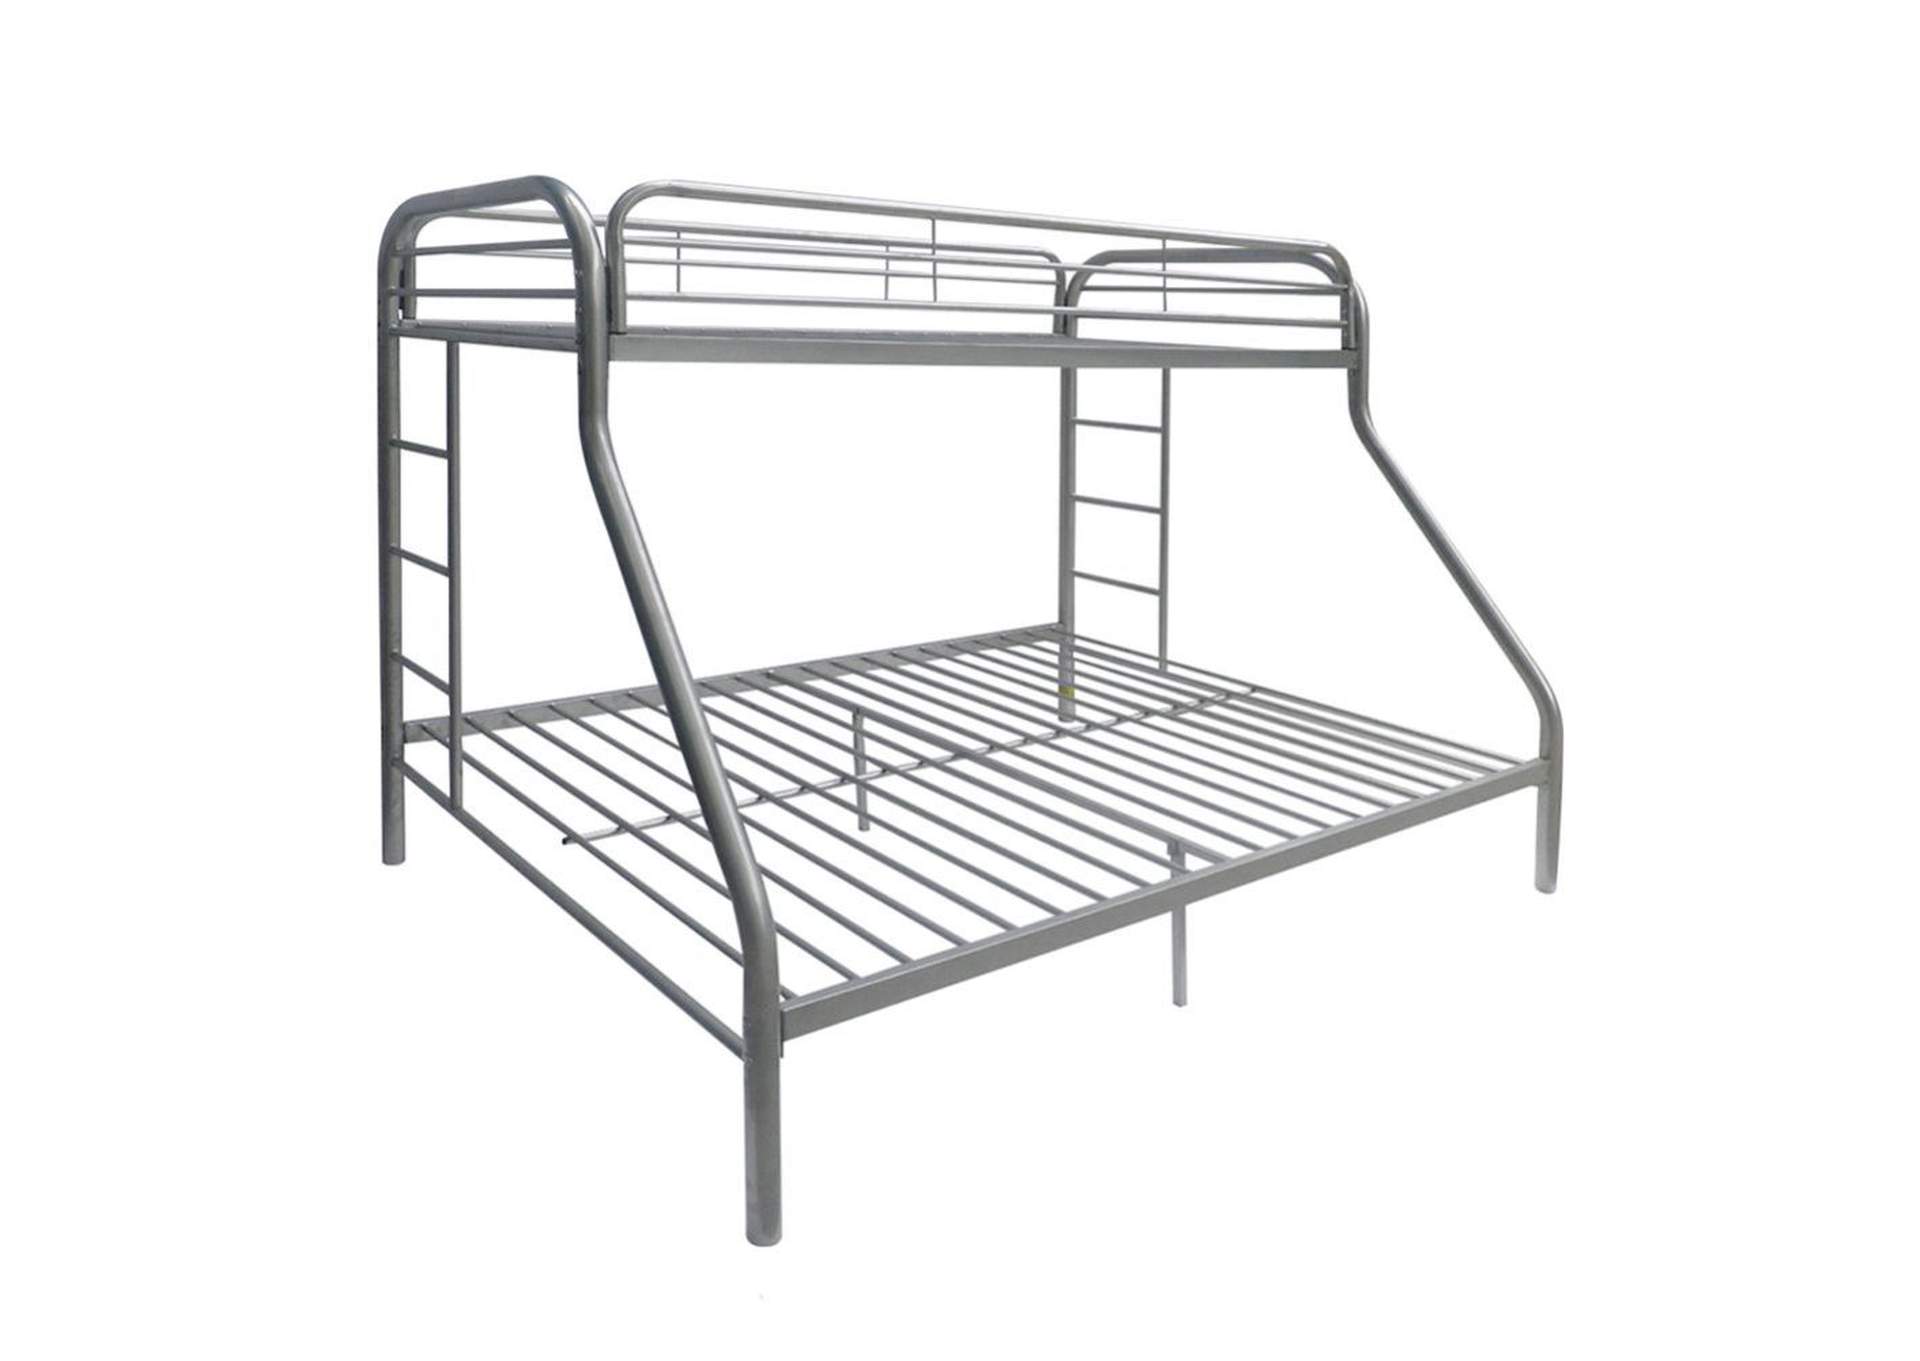 Tritan Silver Twin/Full Bunk Bed,Acme